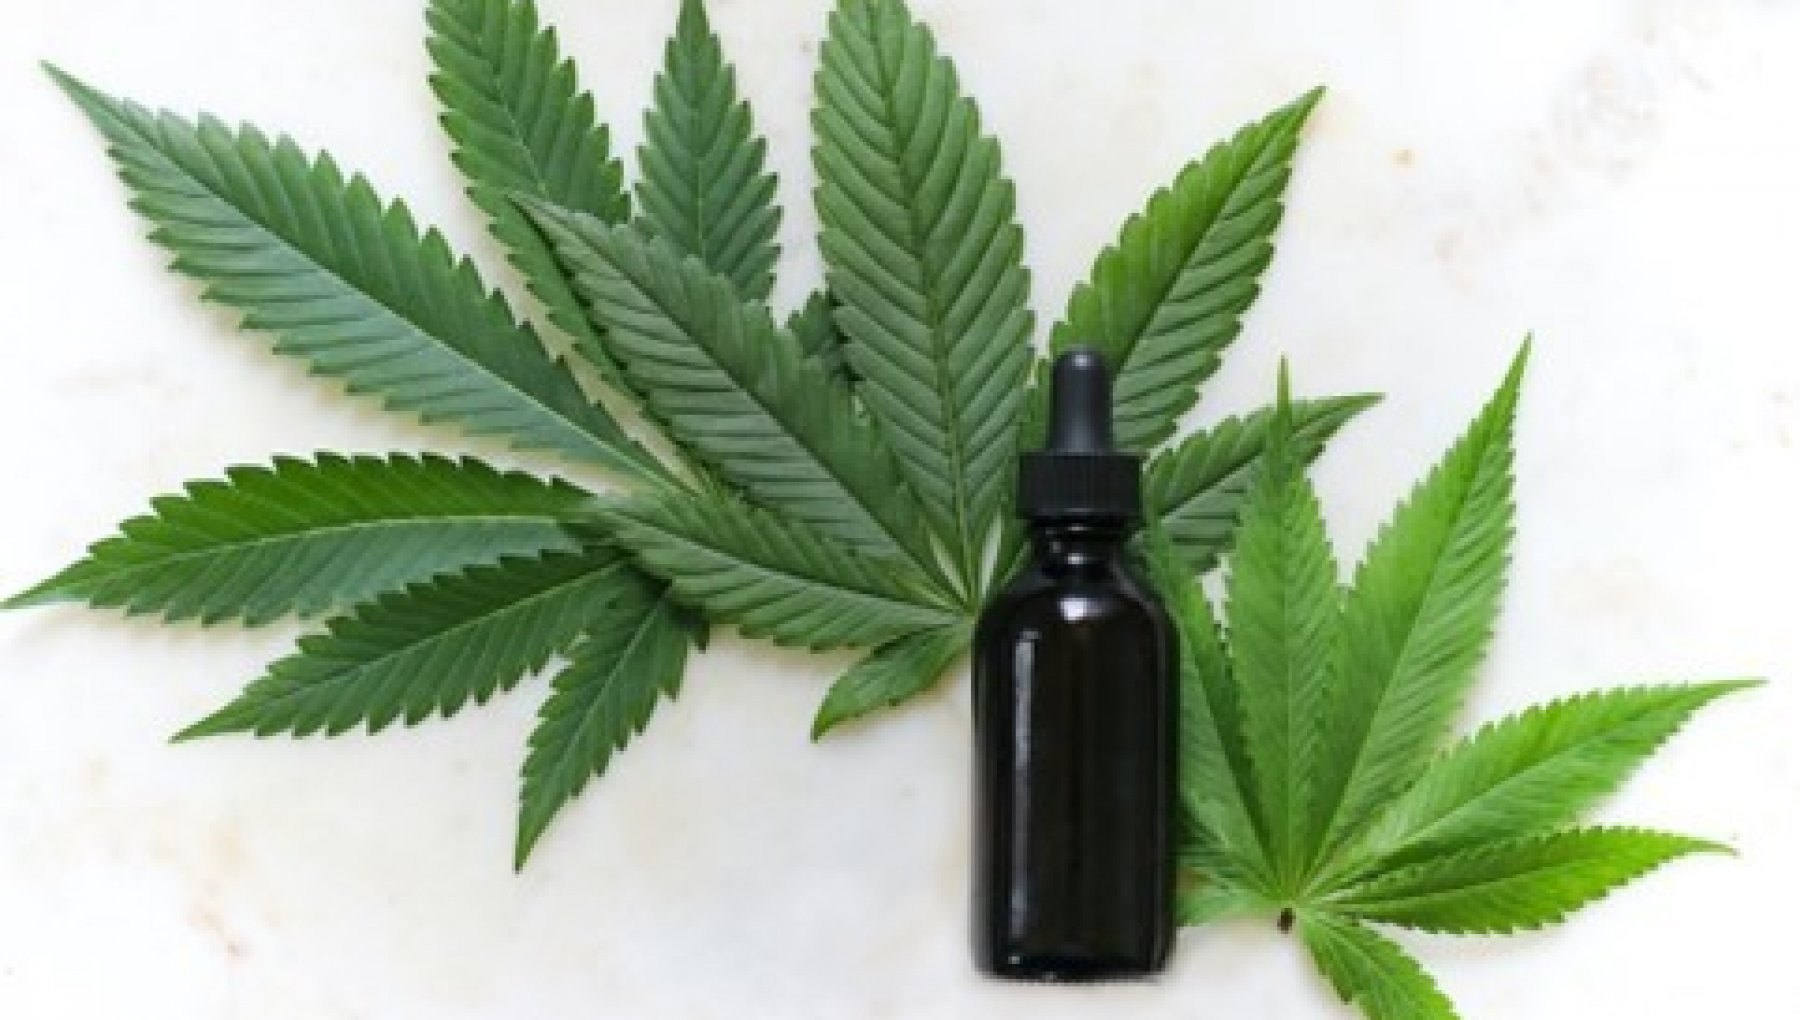 How to grow a cannabis plant